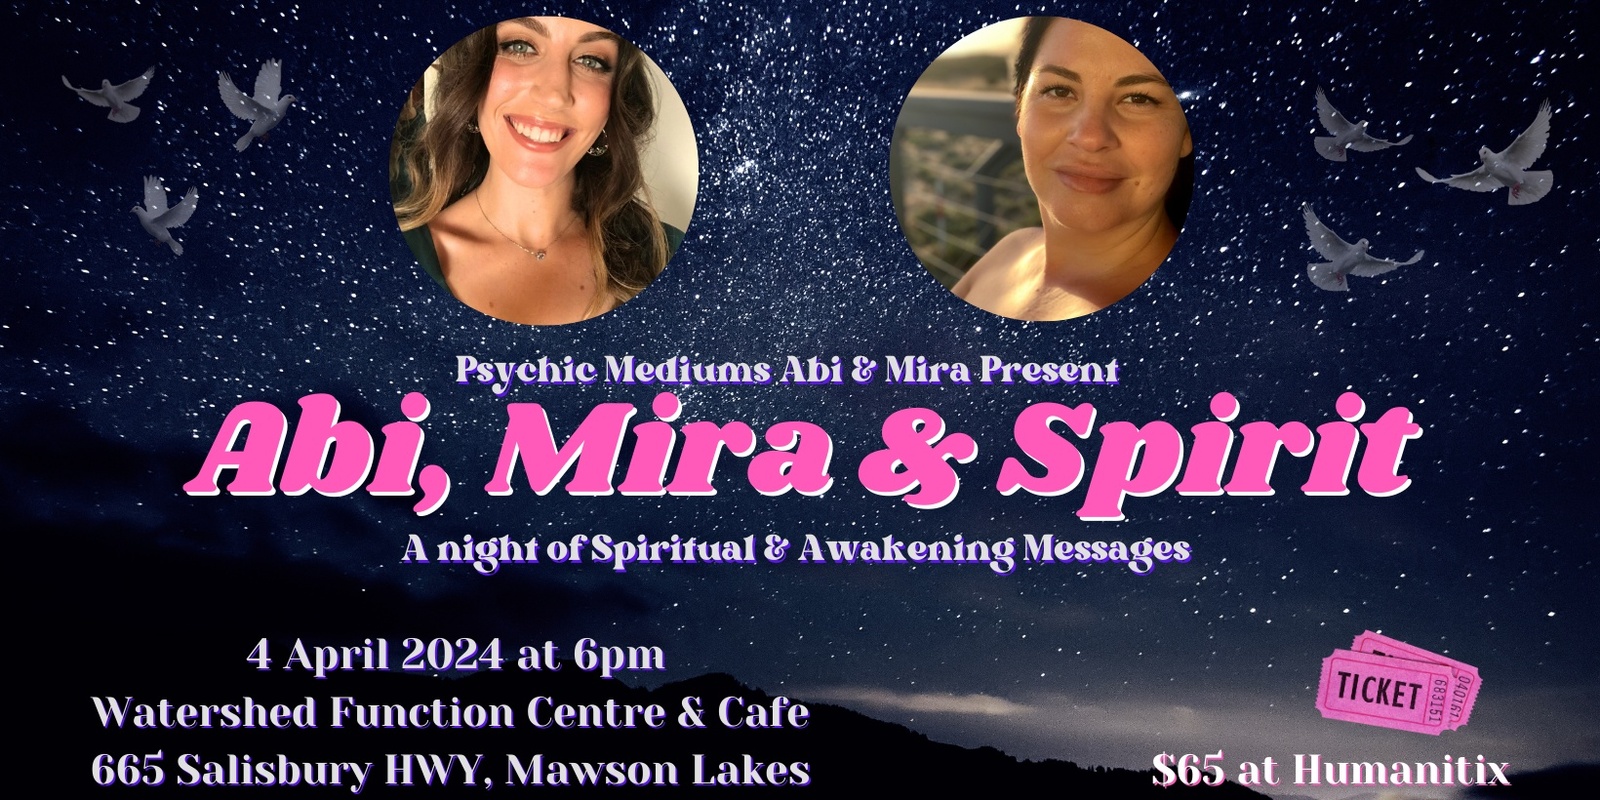 Banner image for Abi, Mira & Spirit - A night of Spiritual & Awakening Messages